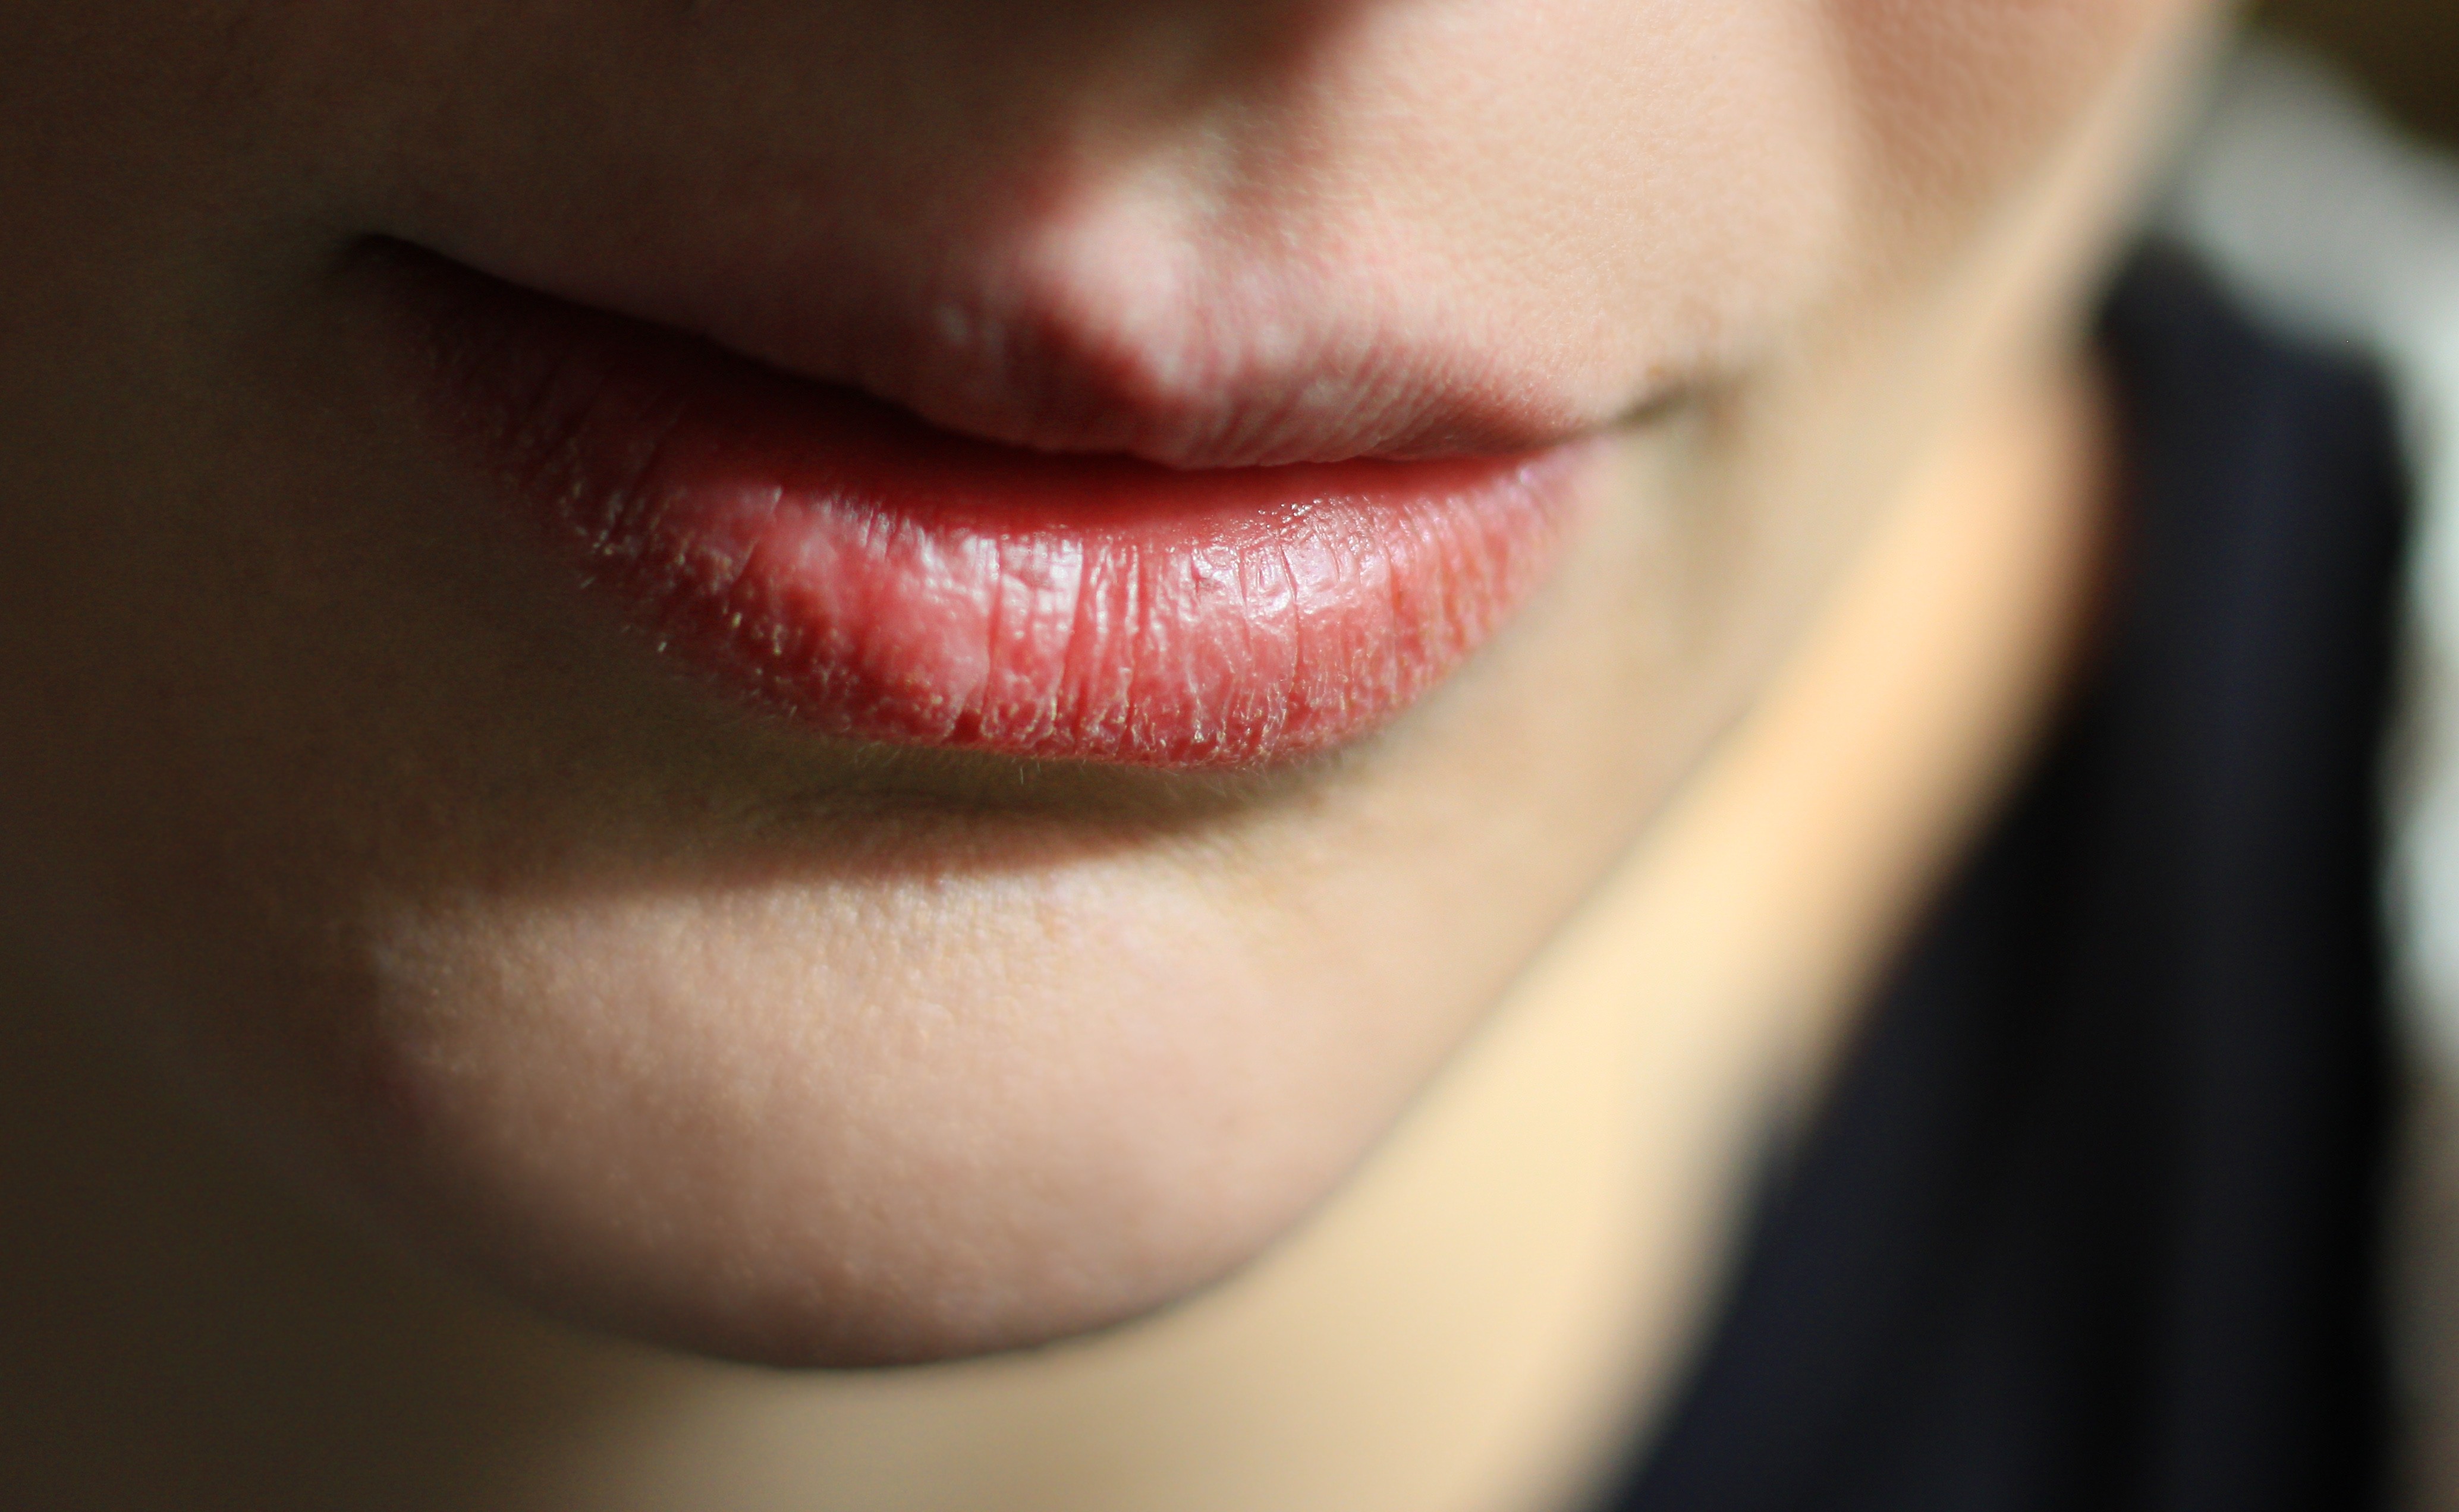 Entenda o sintoma da boca seca e veja como aliviar a sensação